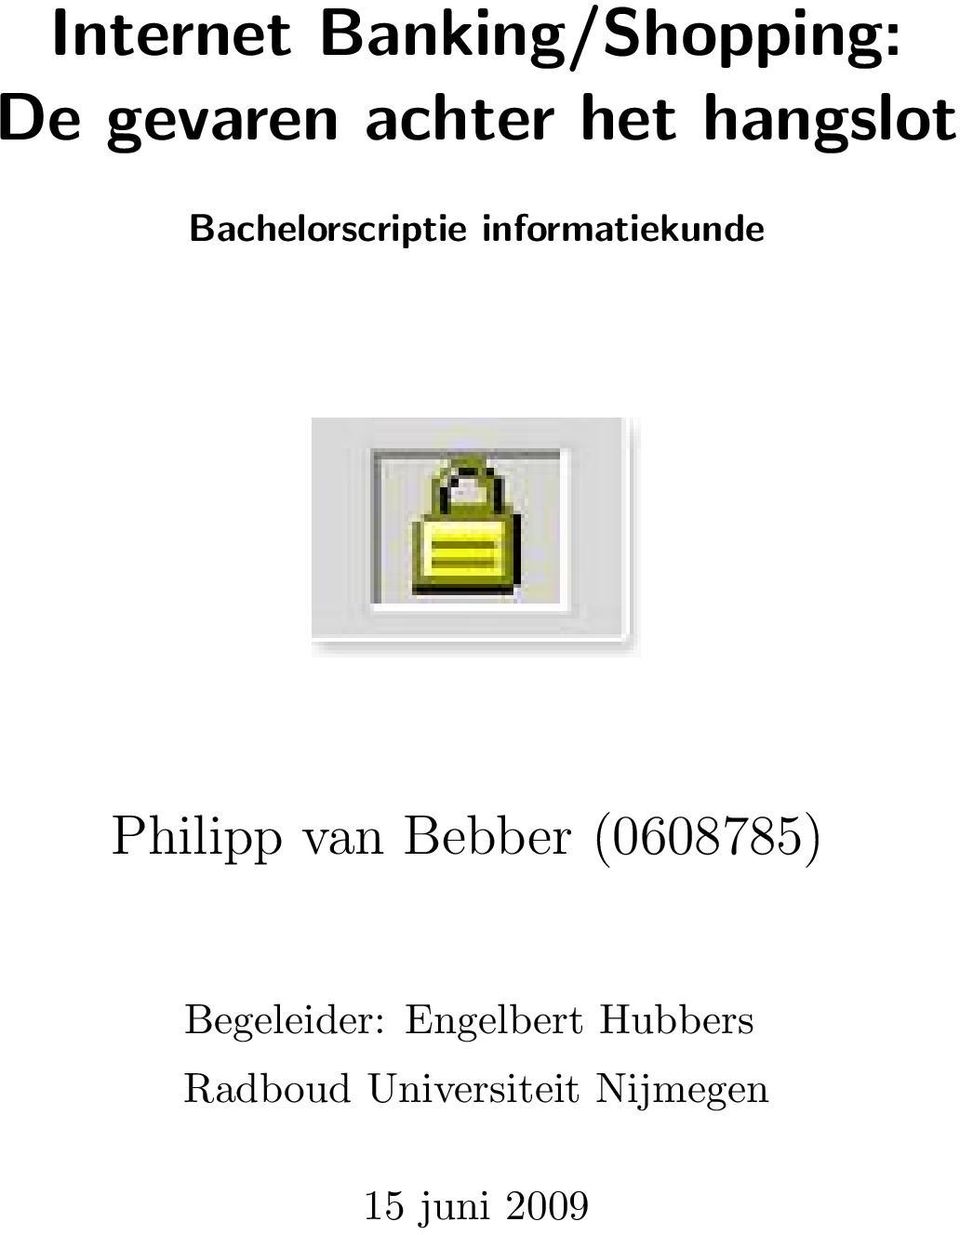 Philipp van Bebber (0608785) Begeleider: